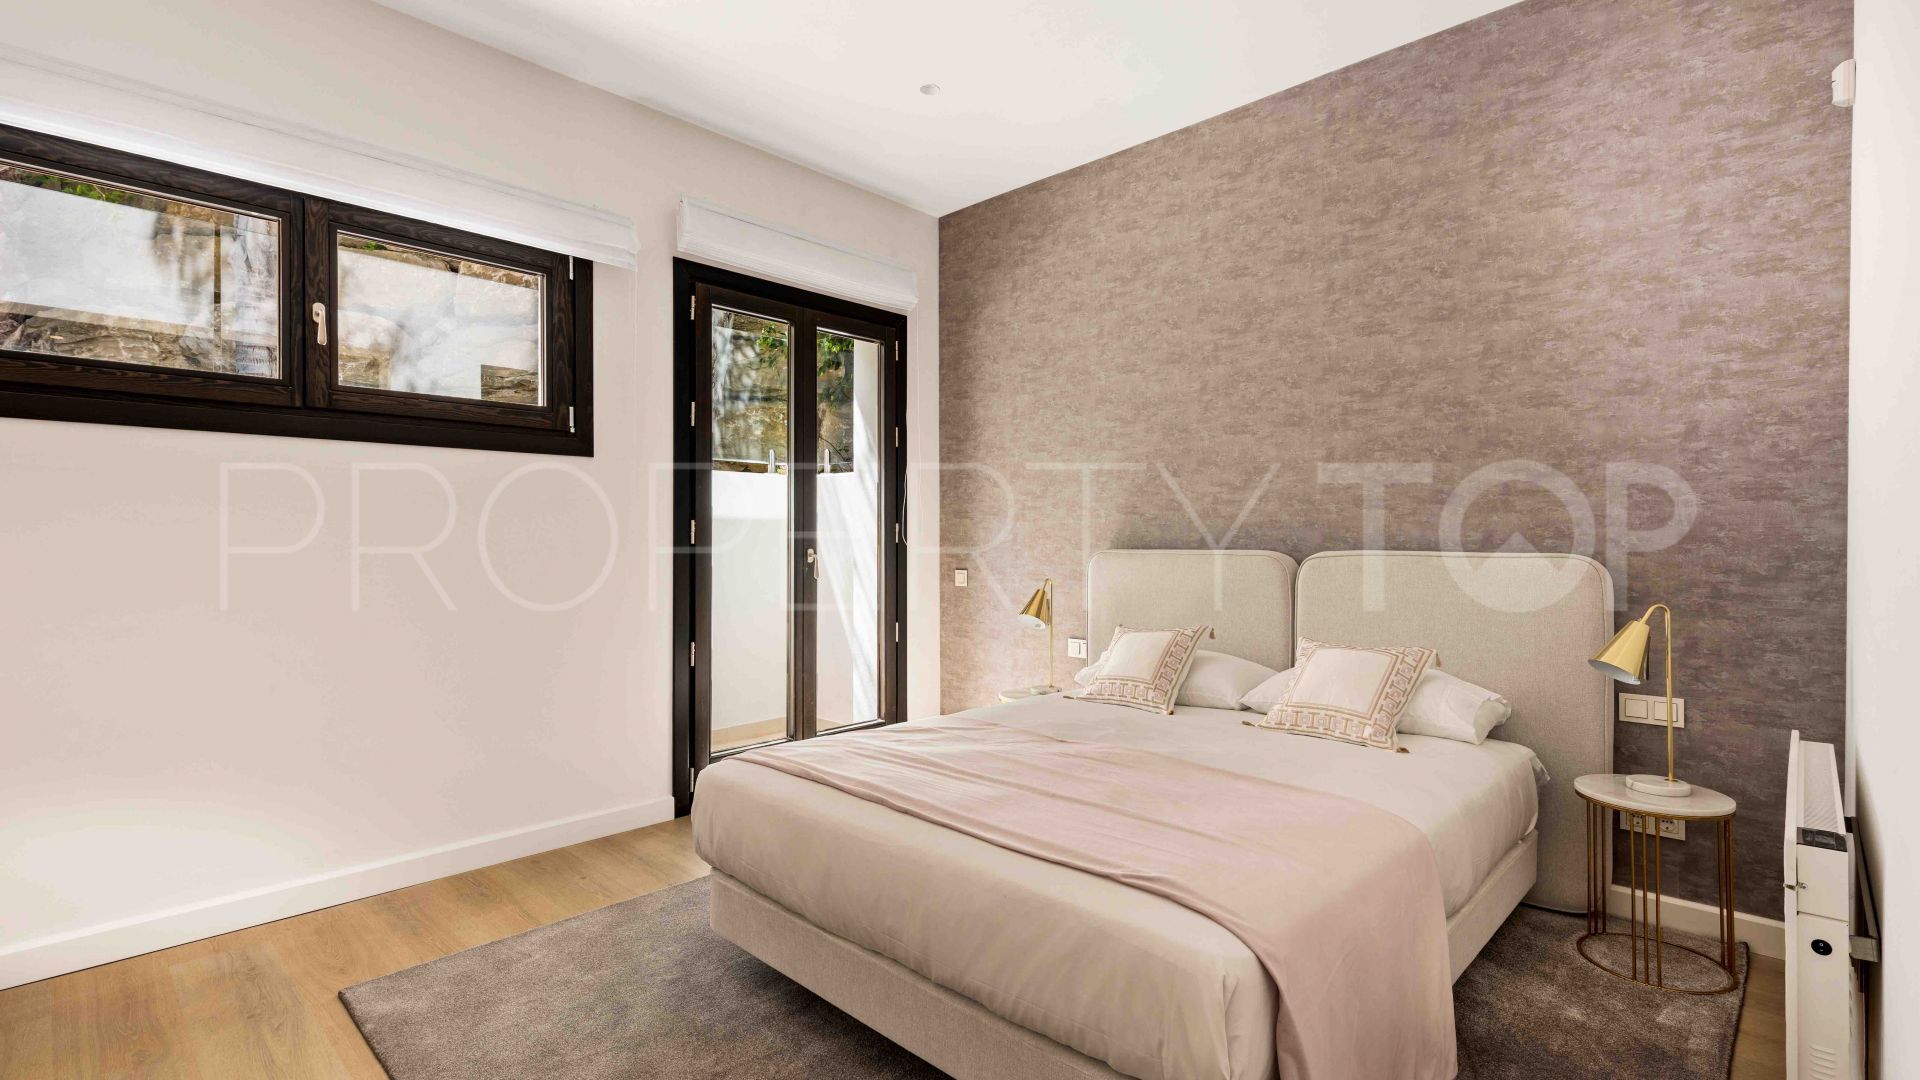 For sale villa in Brisas del Sur with 4 bedrooms